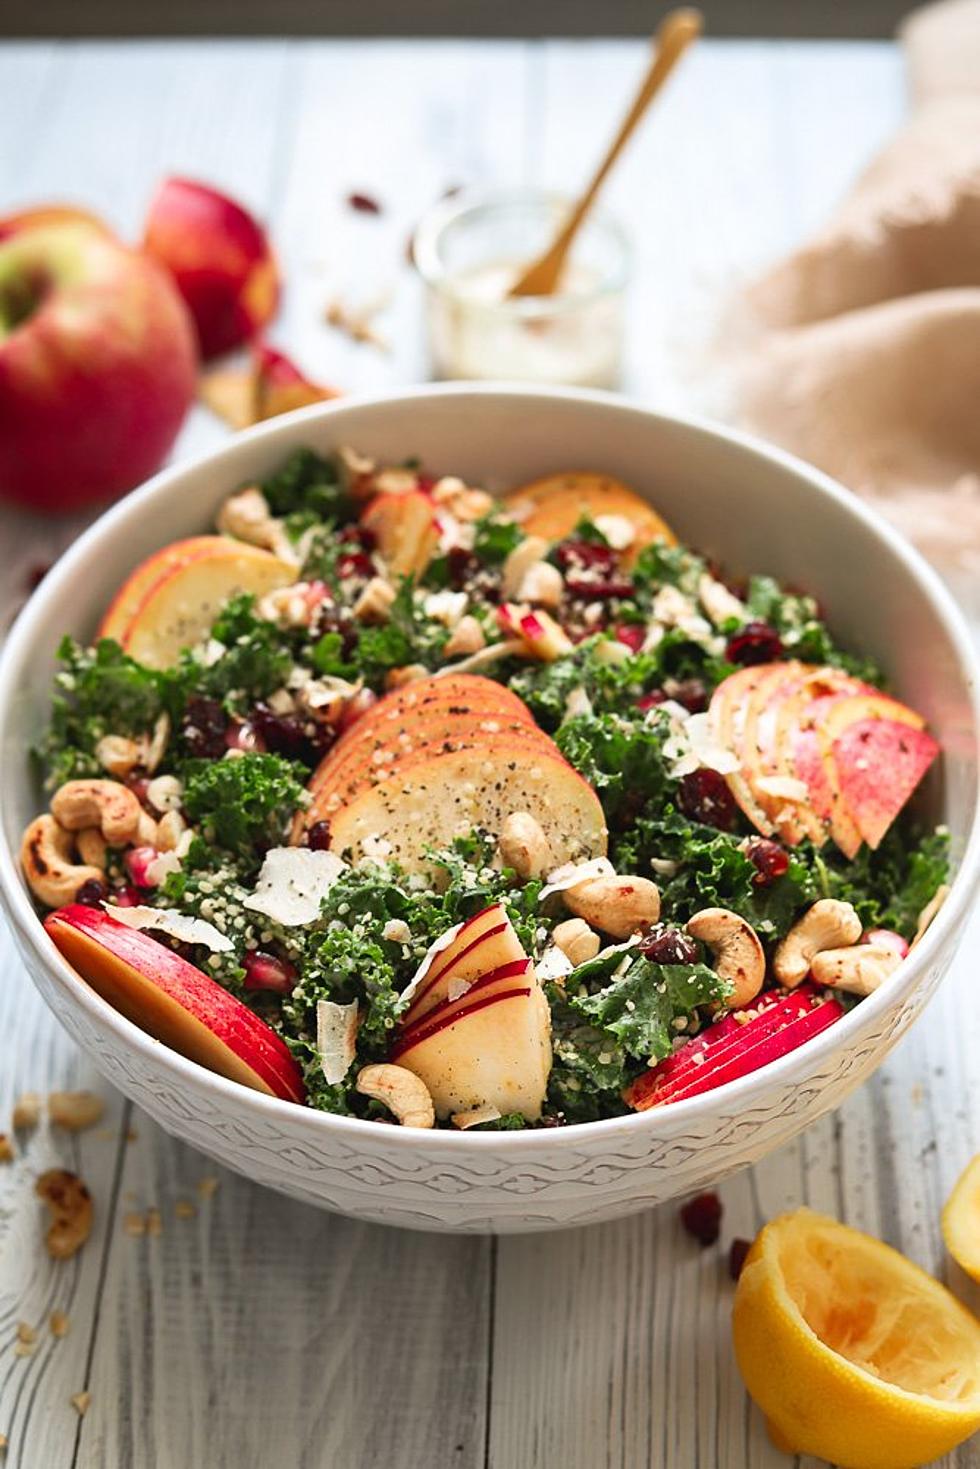 Make Your Own Sweetgreen Salad at Home: Harvest Kale Caesar Bowl